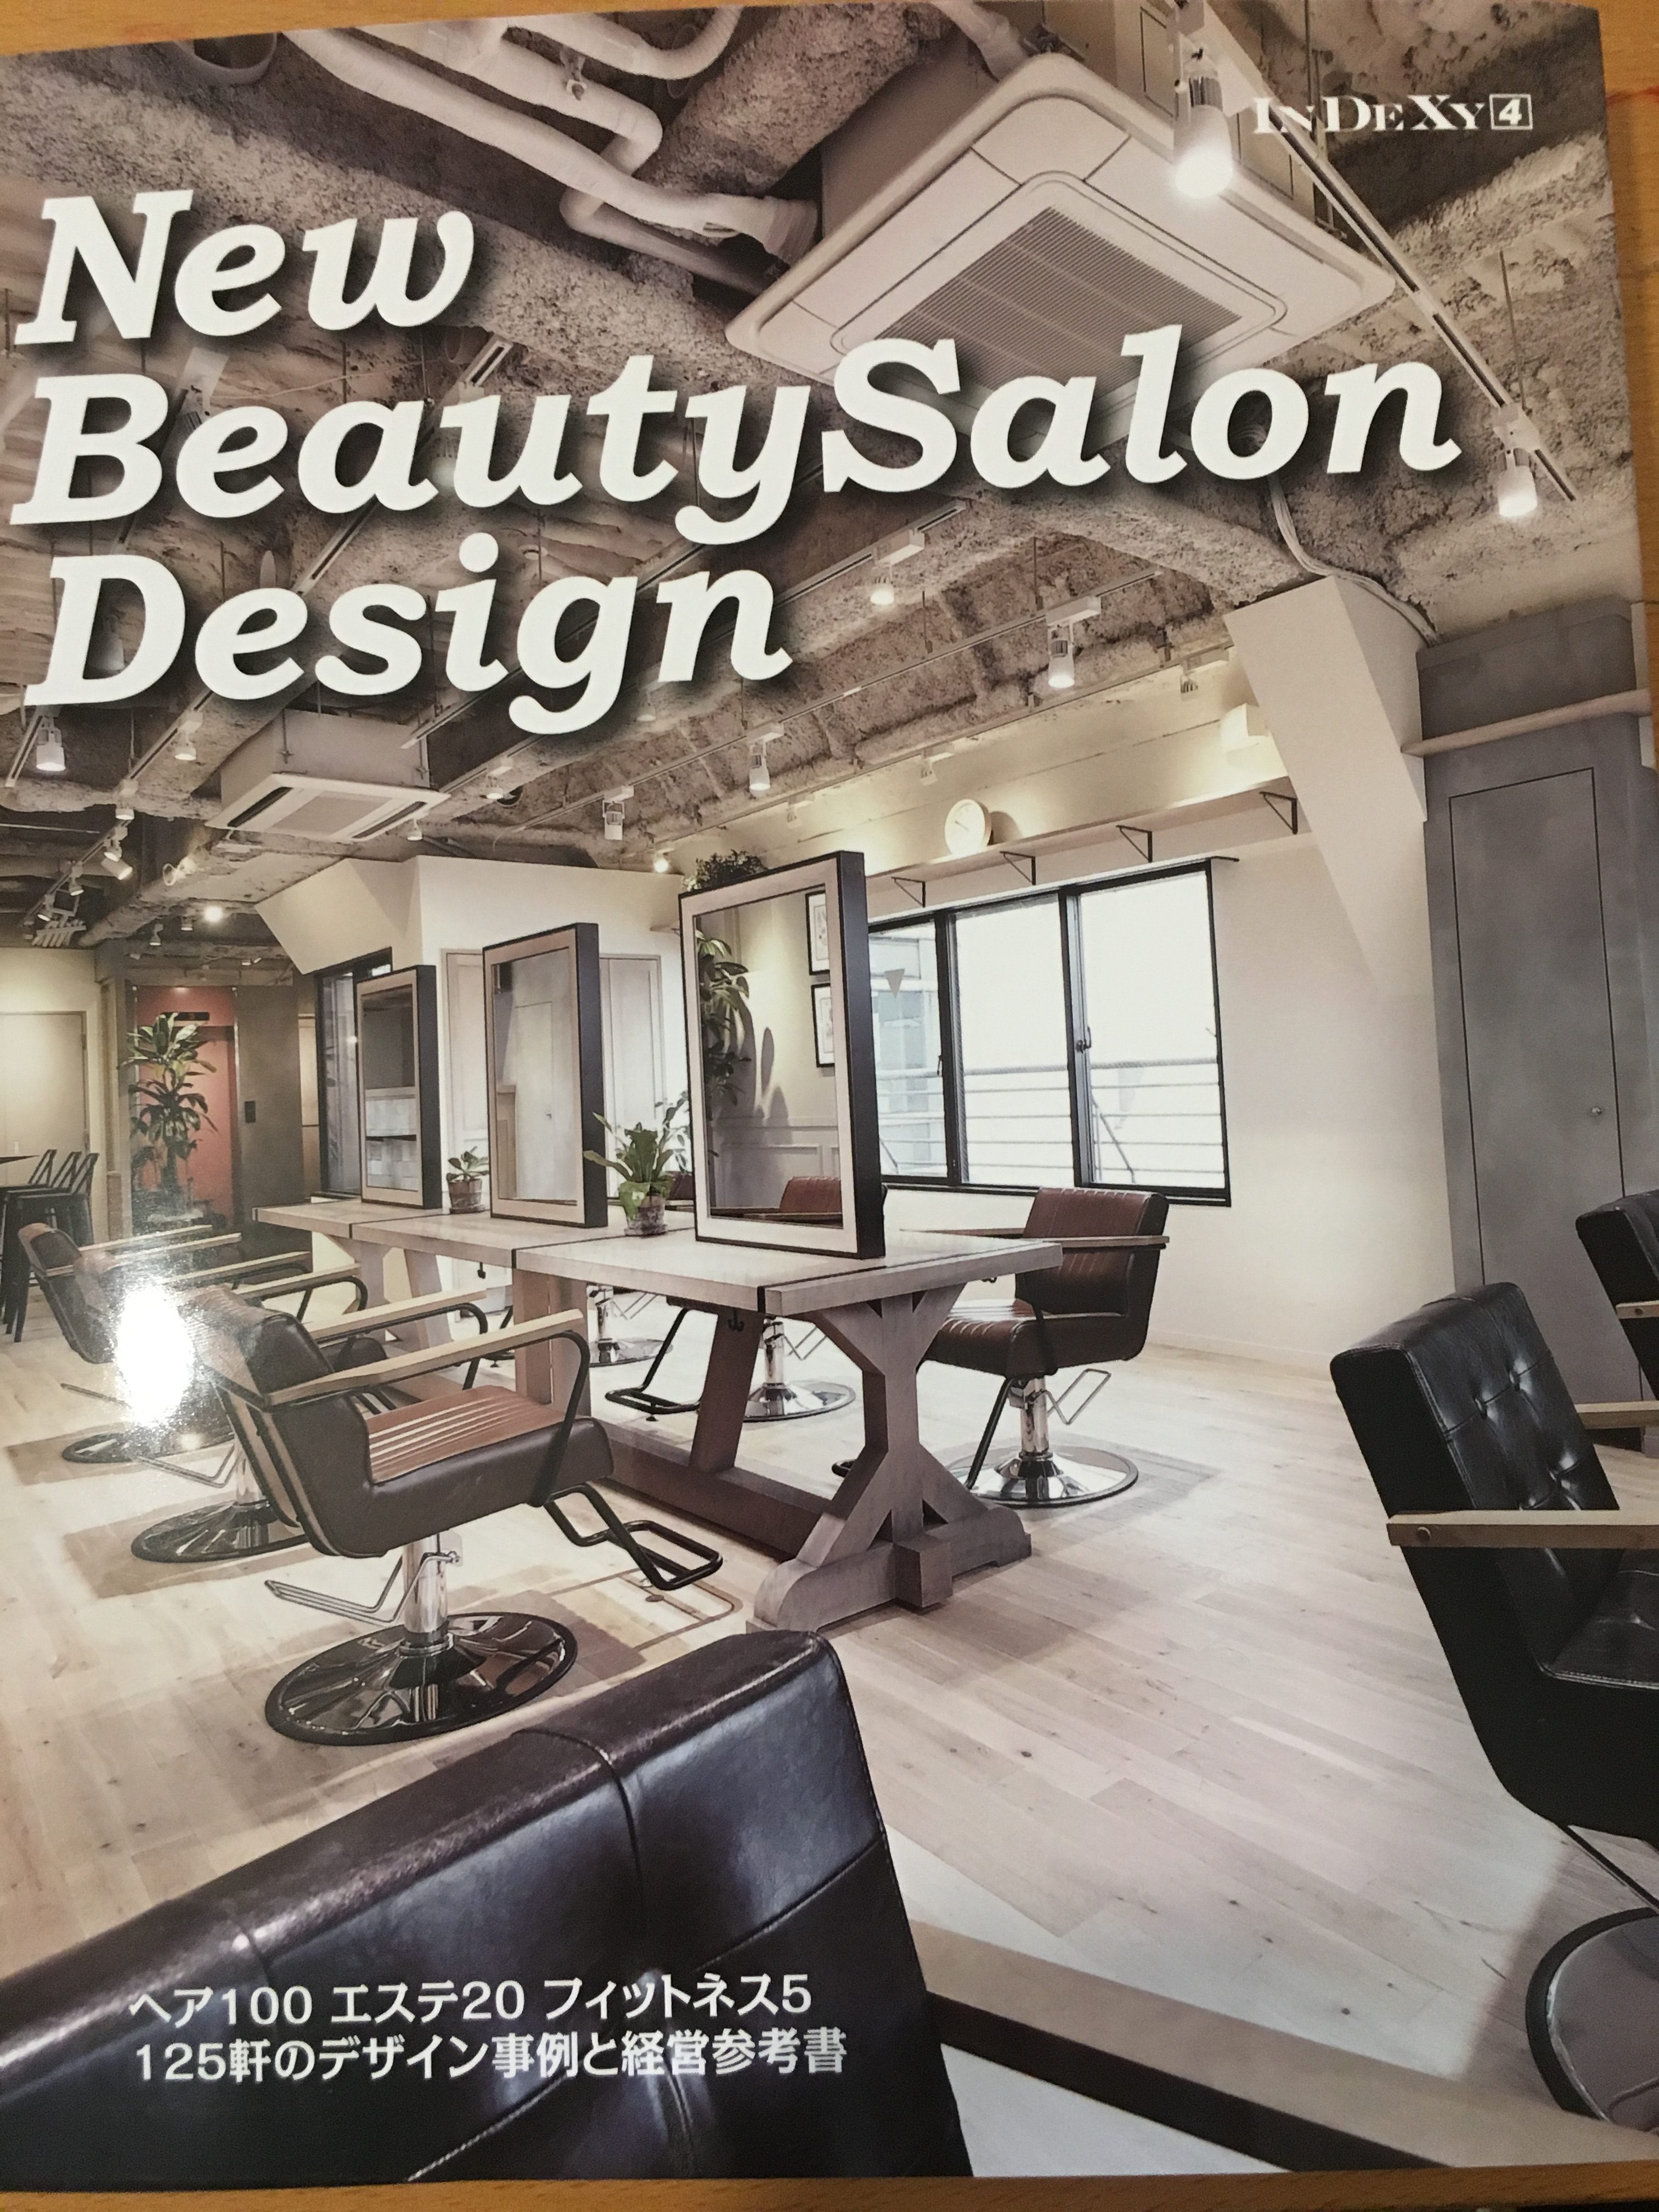 『New Beauty Salon Design』の表紙です。